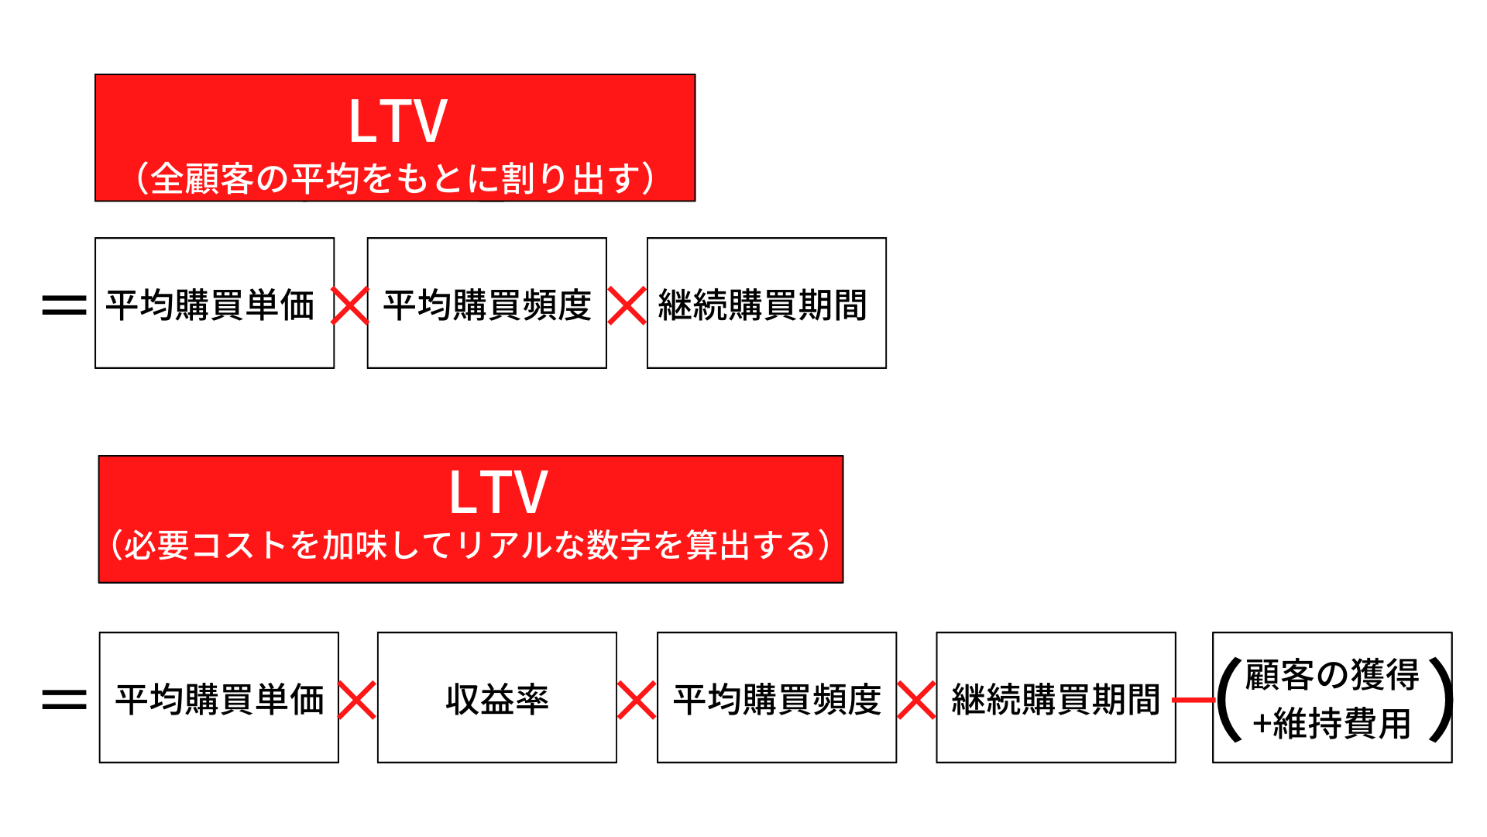 LTVを算出する計算方法